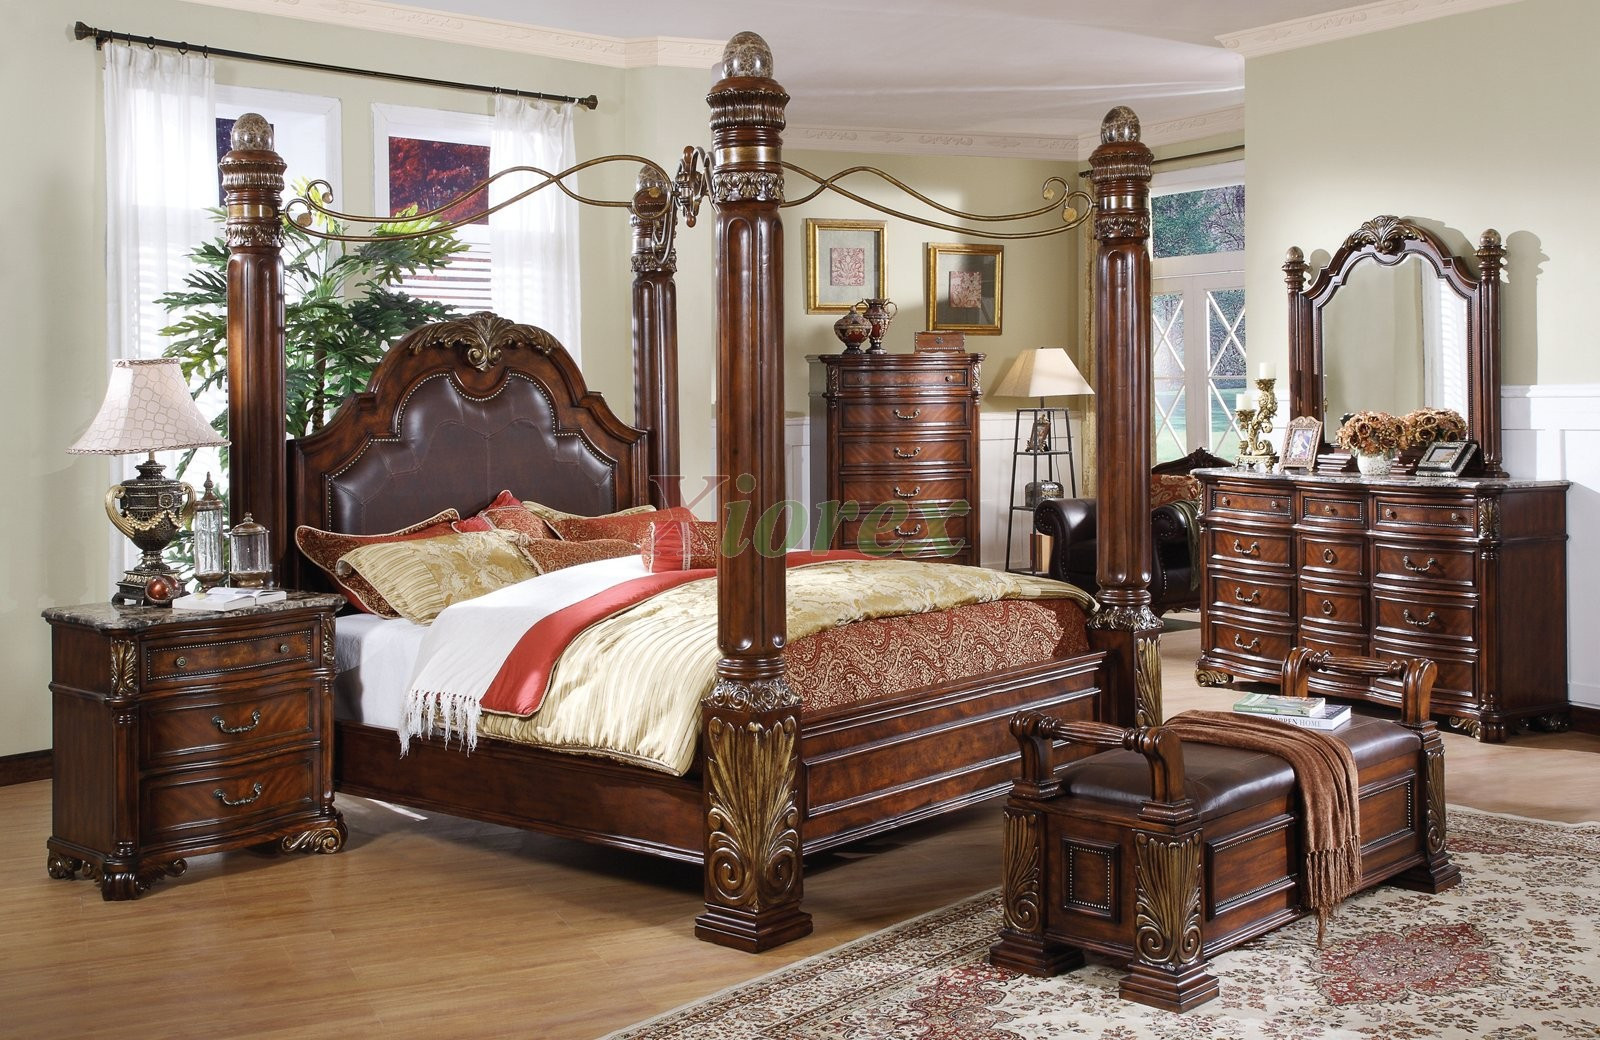 Master Bedroom Sets King
 Bedroom Best King Size Canopy Bed For Elegant Master